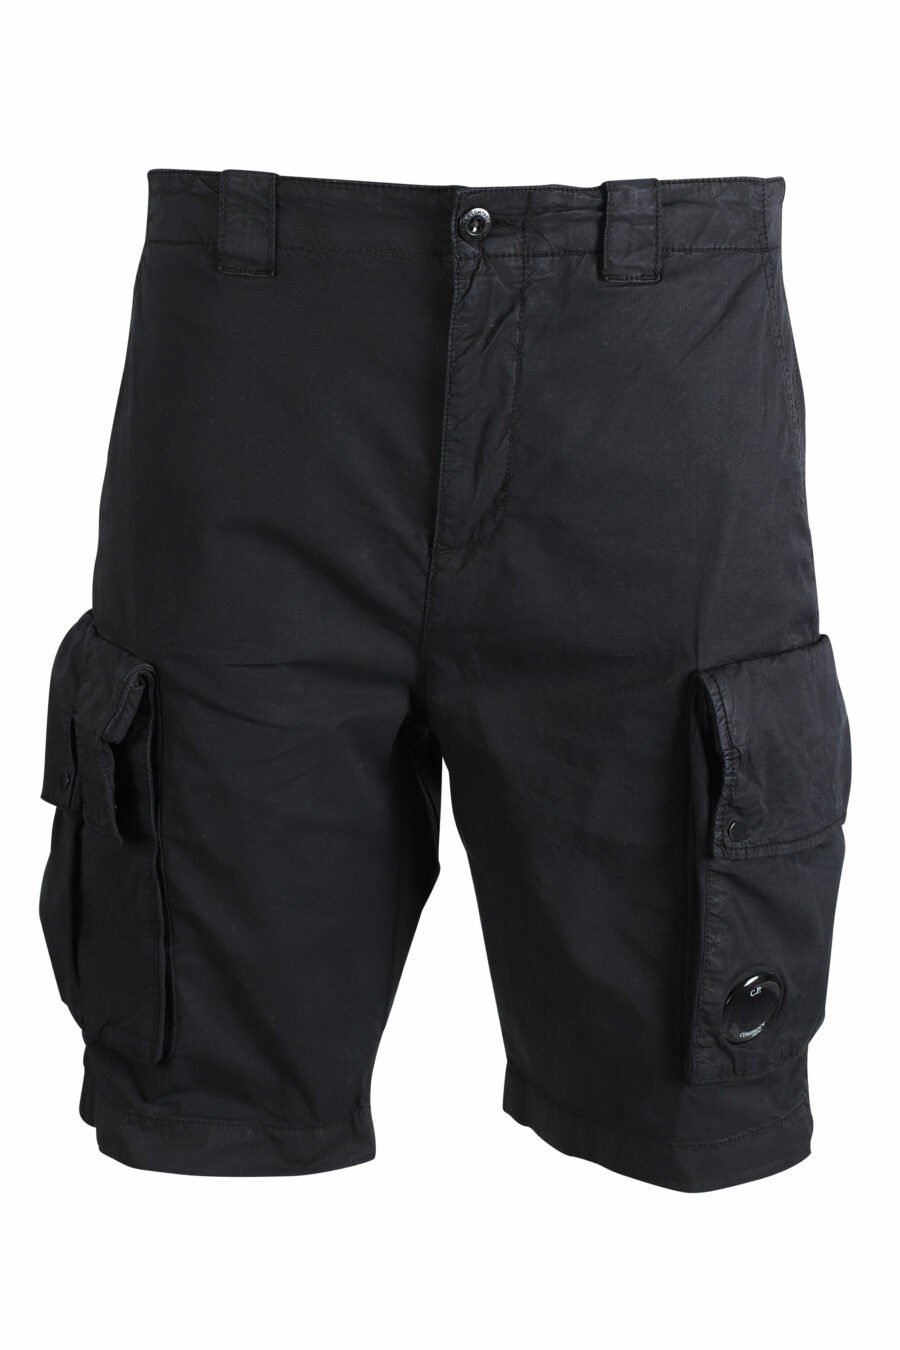 C.P. Company - Pantalón corto negro con bolsillos laterales y